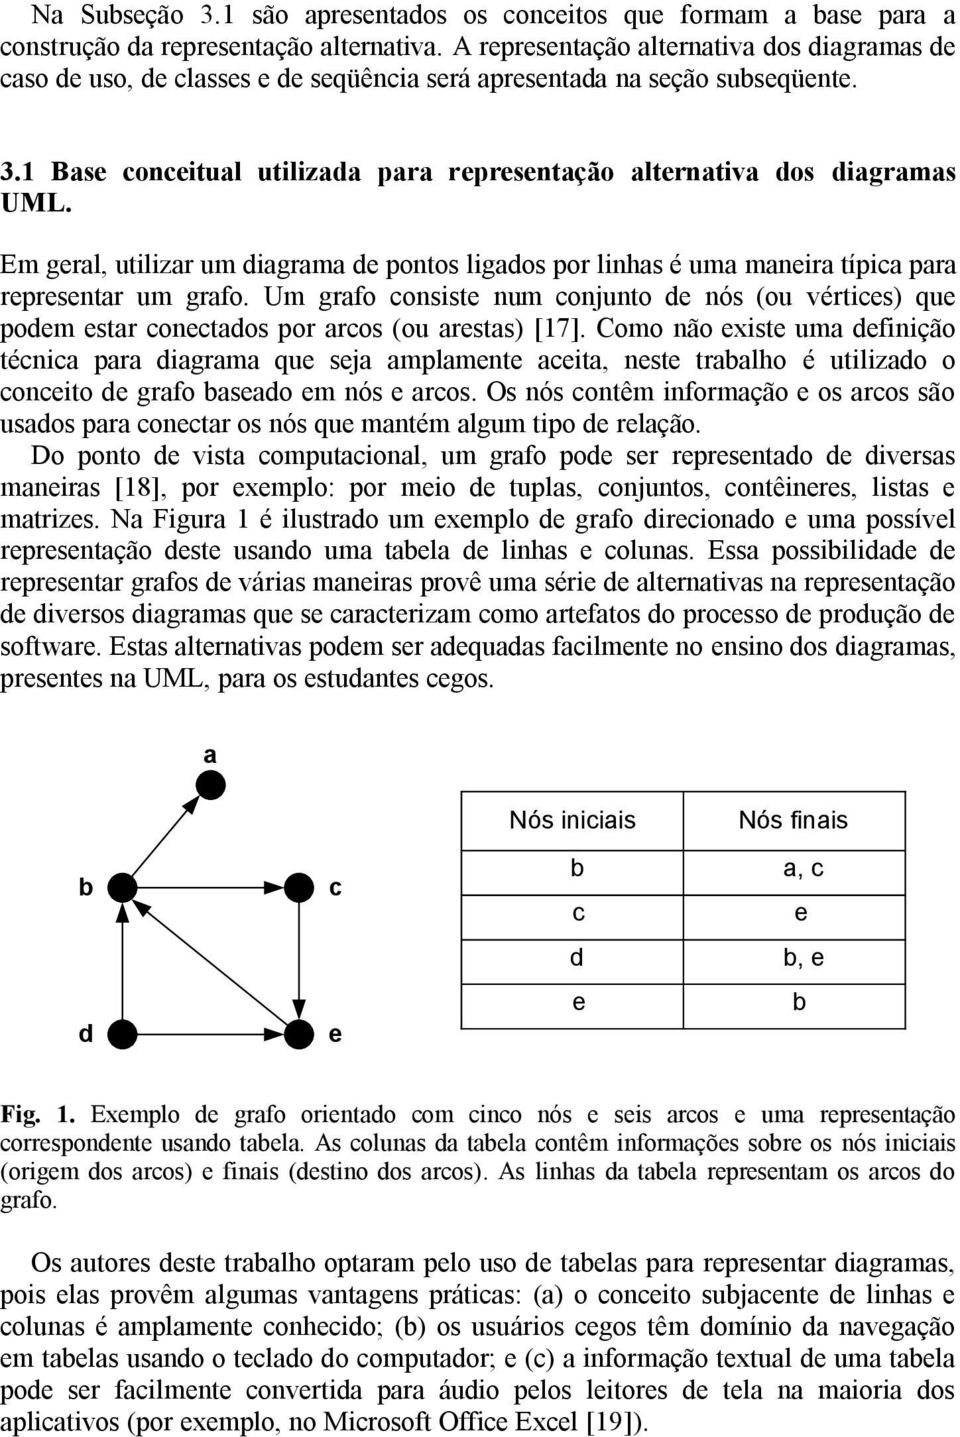 1 Base conceitual utilizada para representação alternativa dos diagramas UML. Em geral, utilizar um diagrama de pontos ligados por linhas é uma maneira típica para representar um grafo.